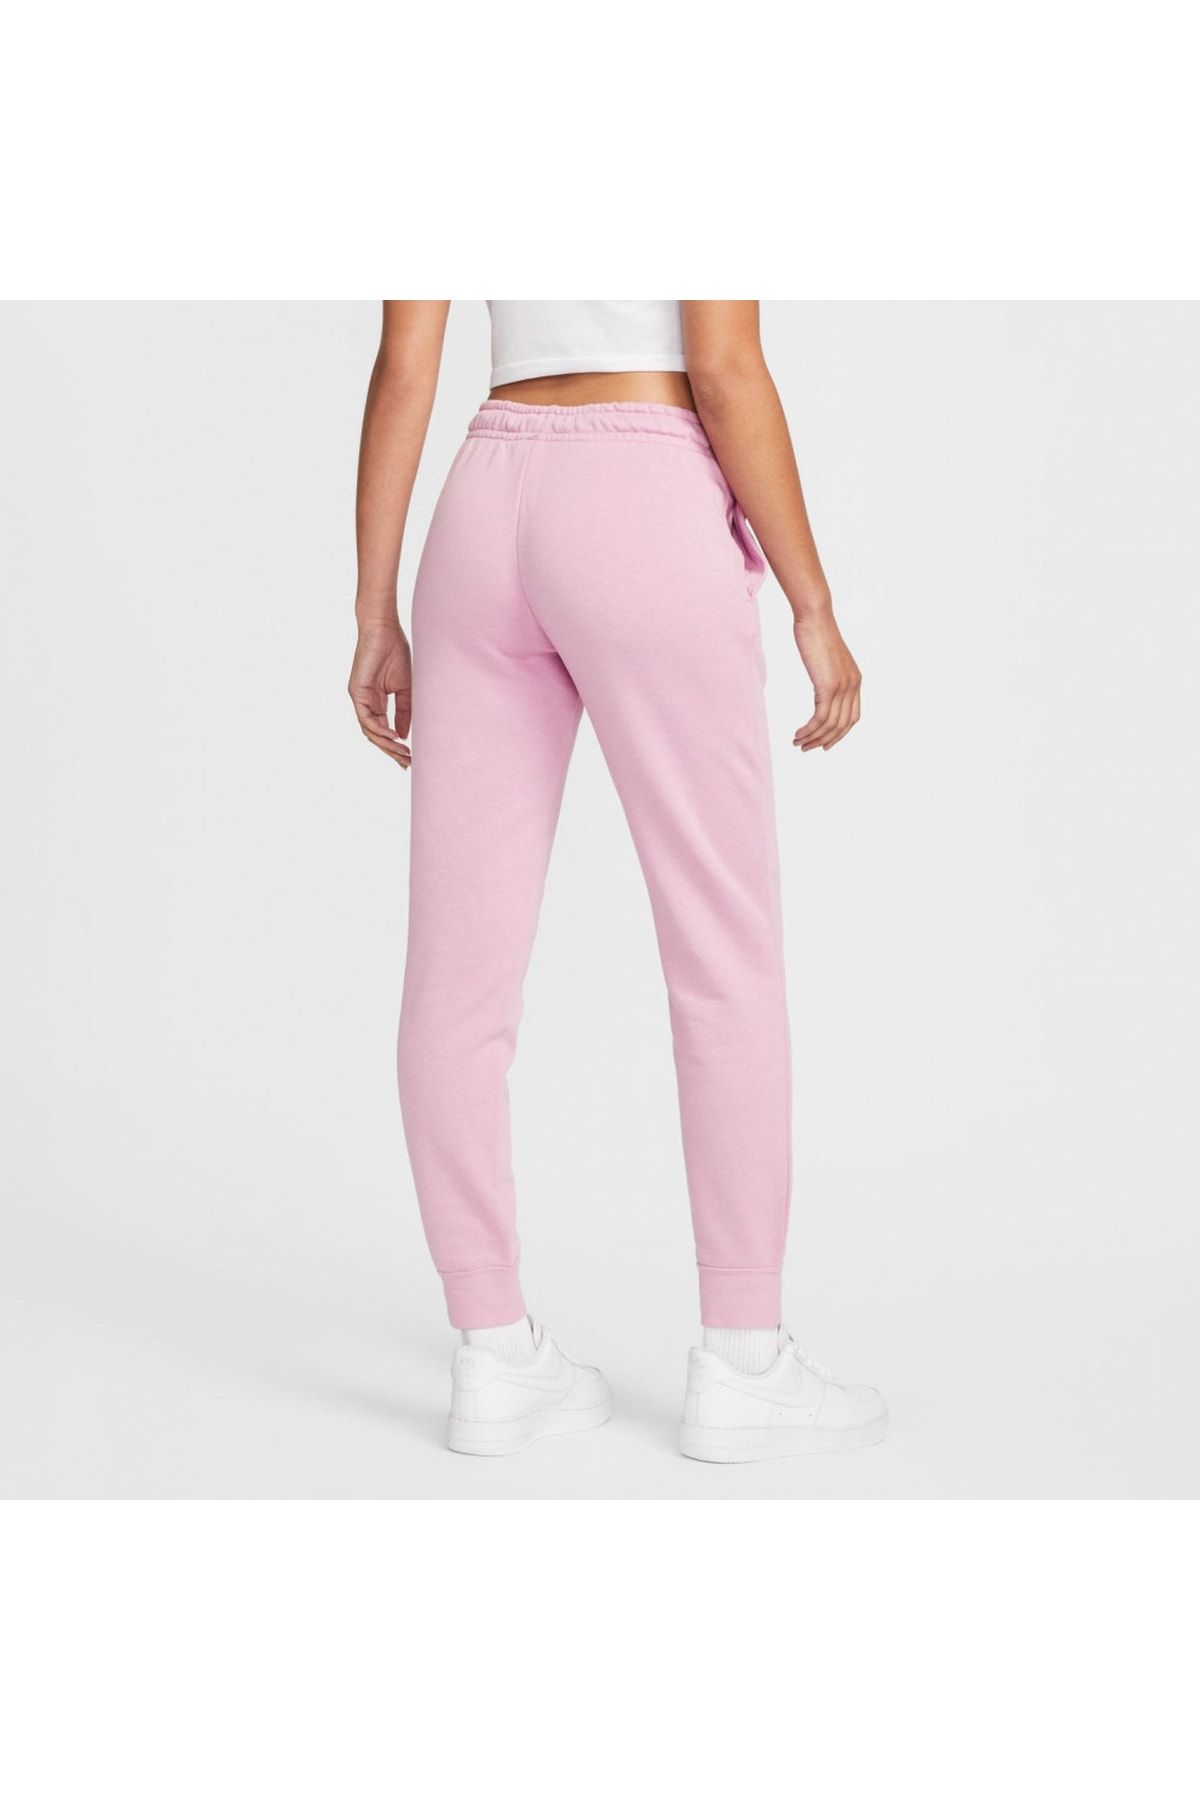 Nike Sportswear Essential Fleece Women\'s Pink Sweatpants - Trendyol